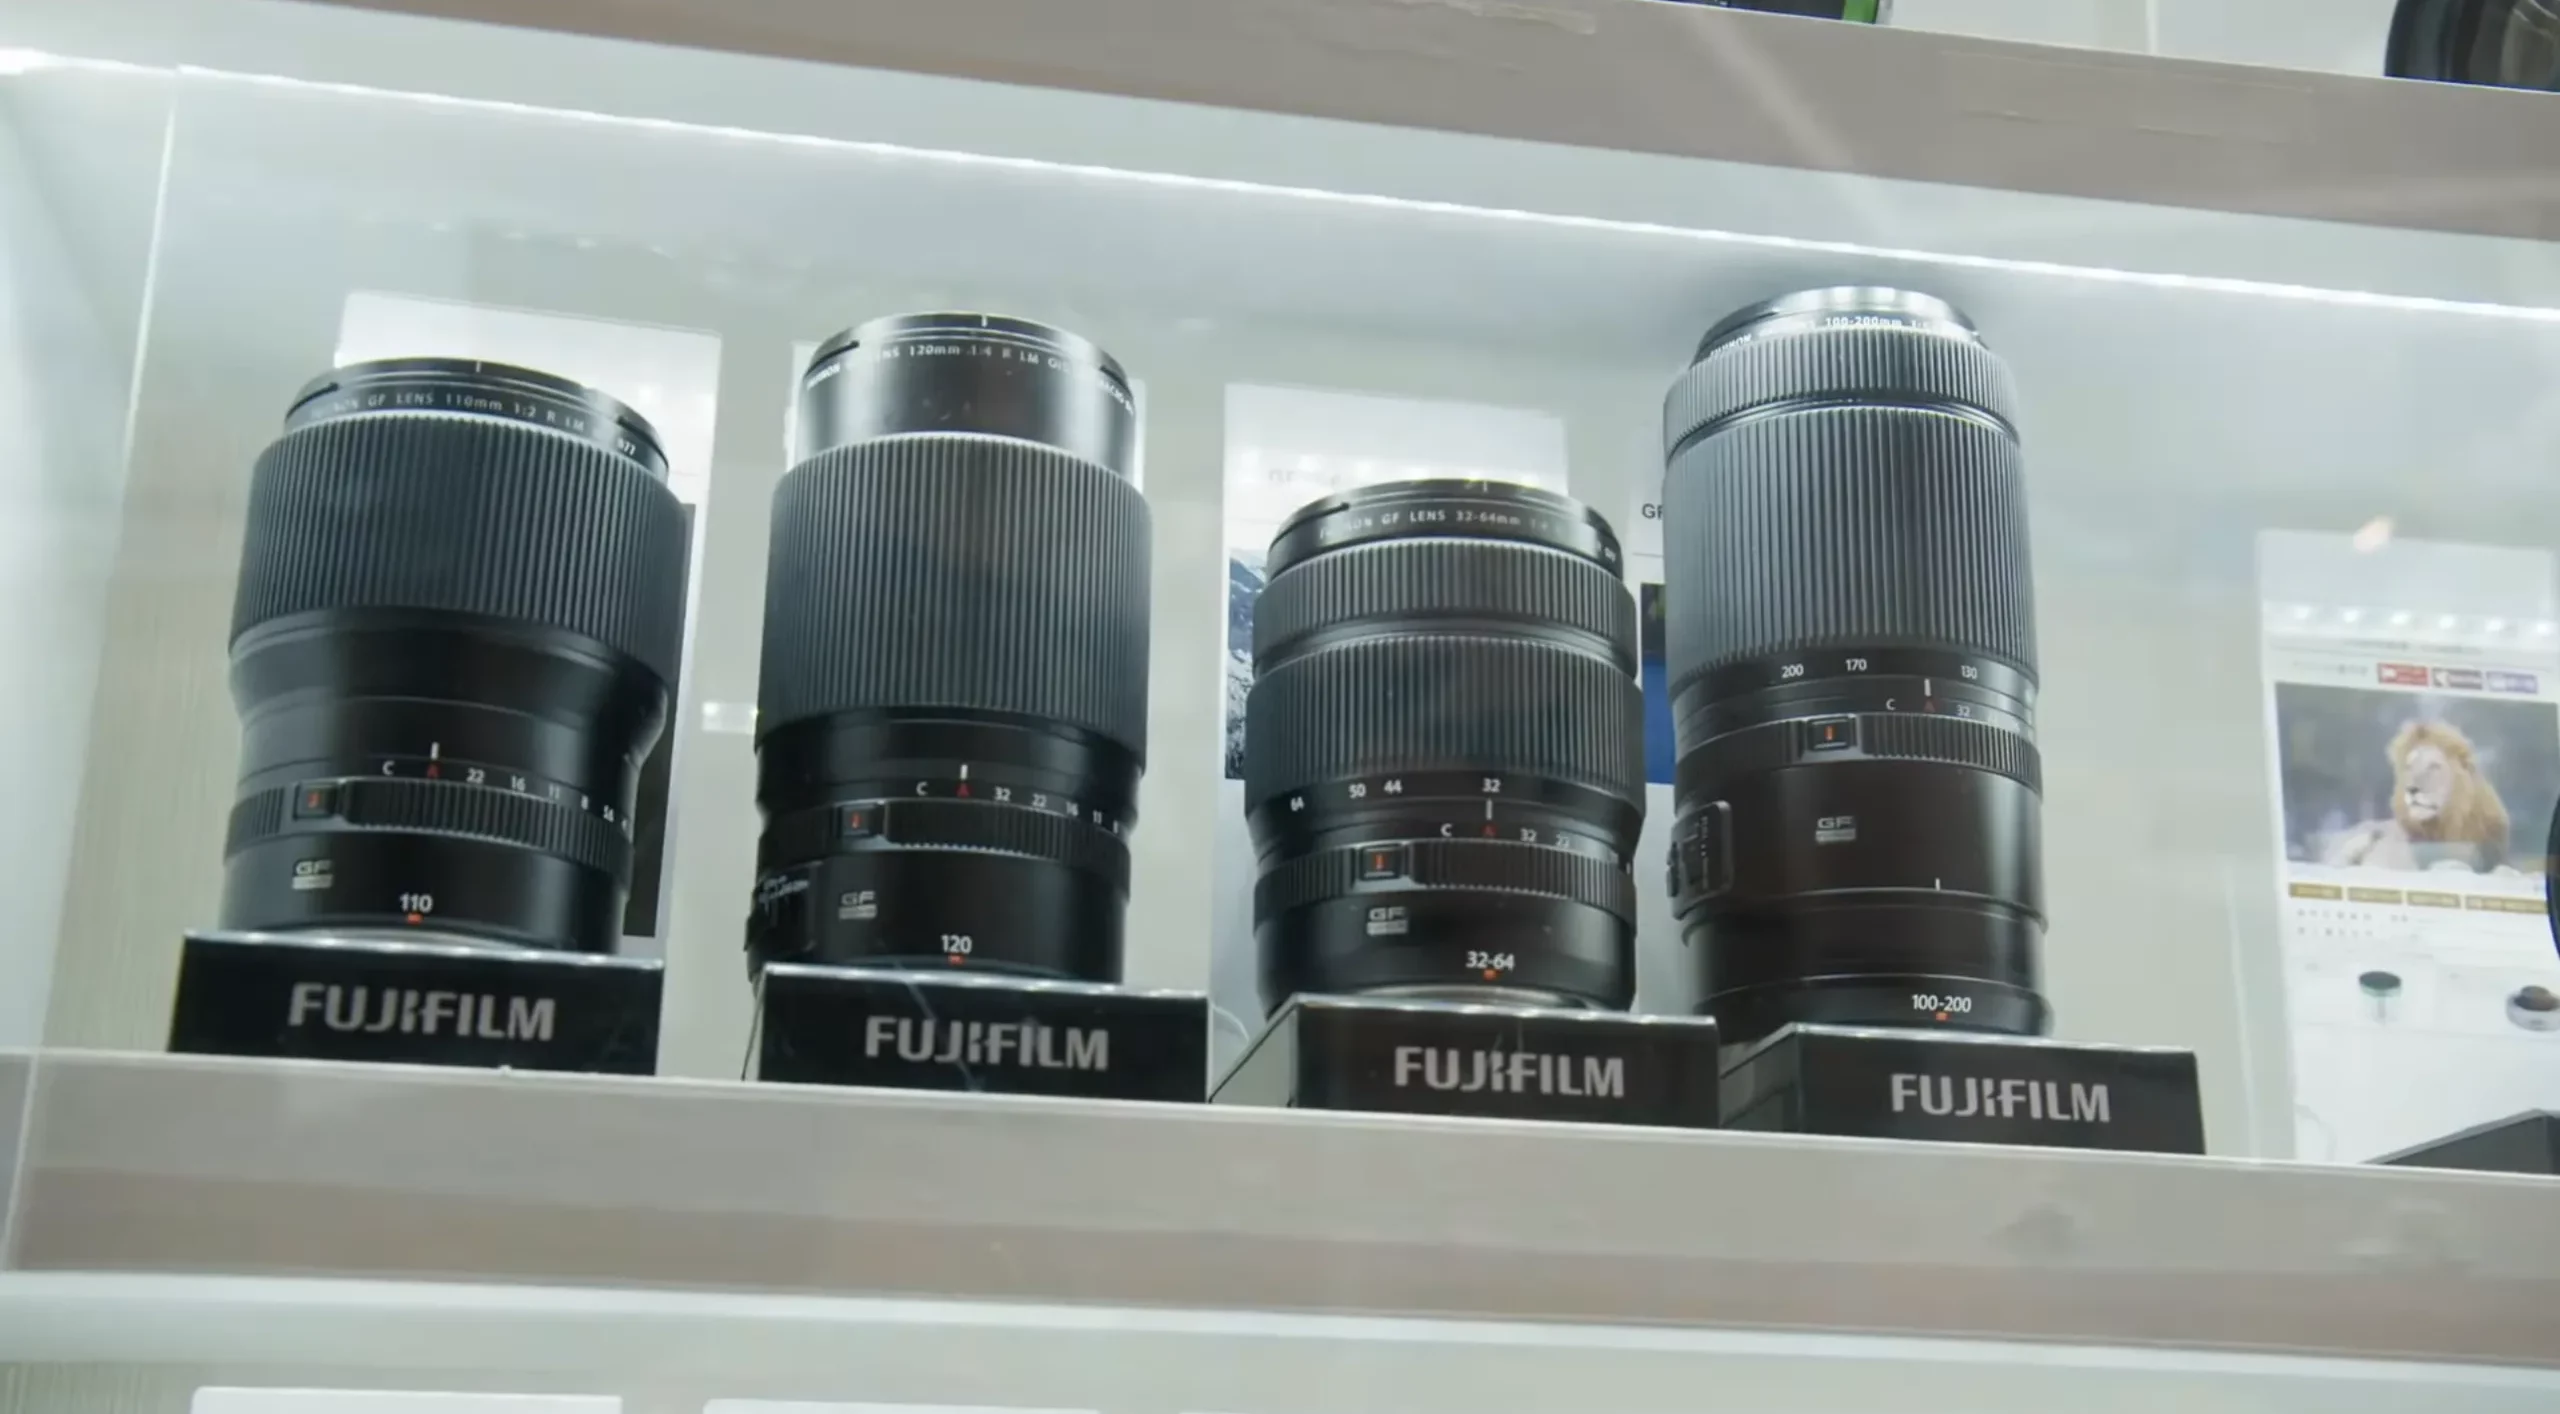 Cùng tham quan nhà máy Fujifilm, nơi sản xuất và lắp ráp các ống kính X và GFX